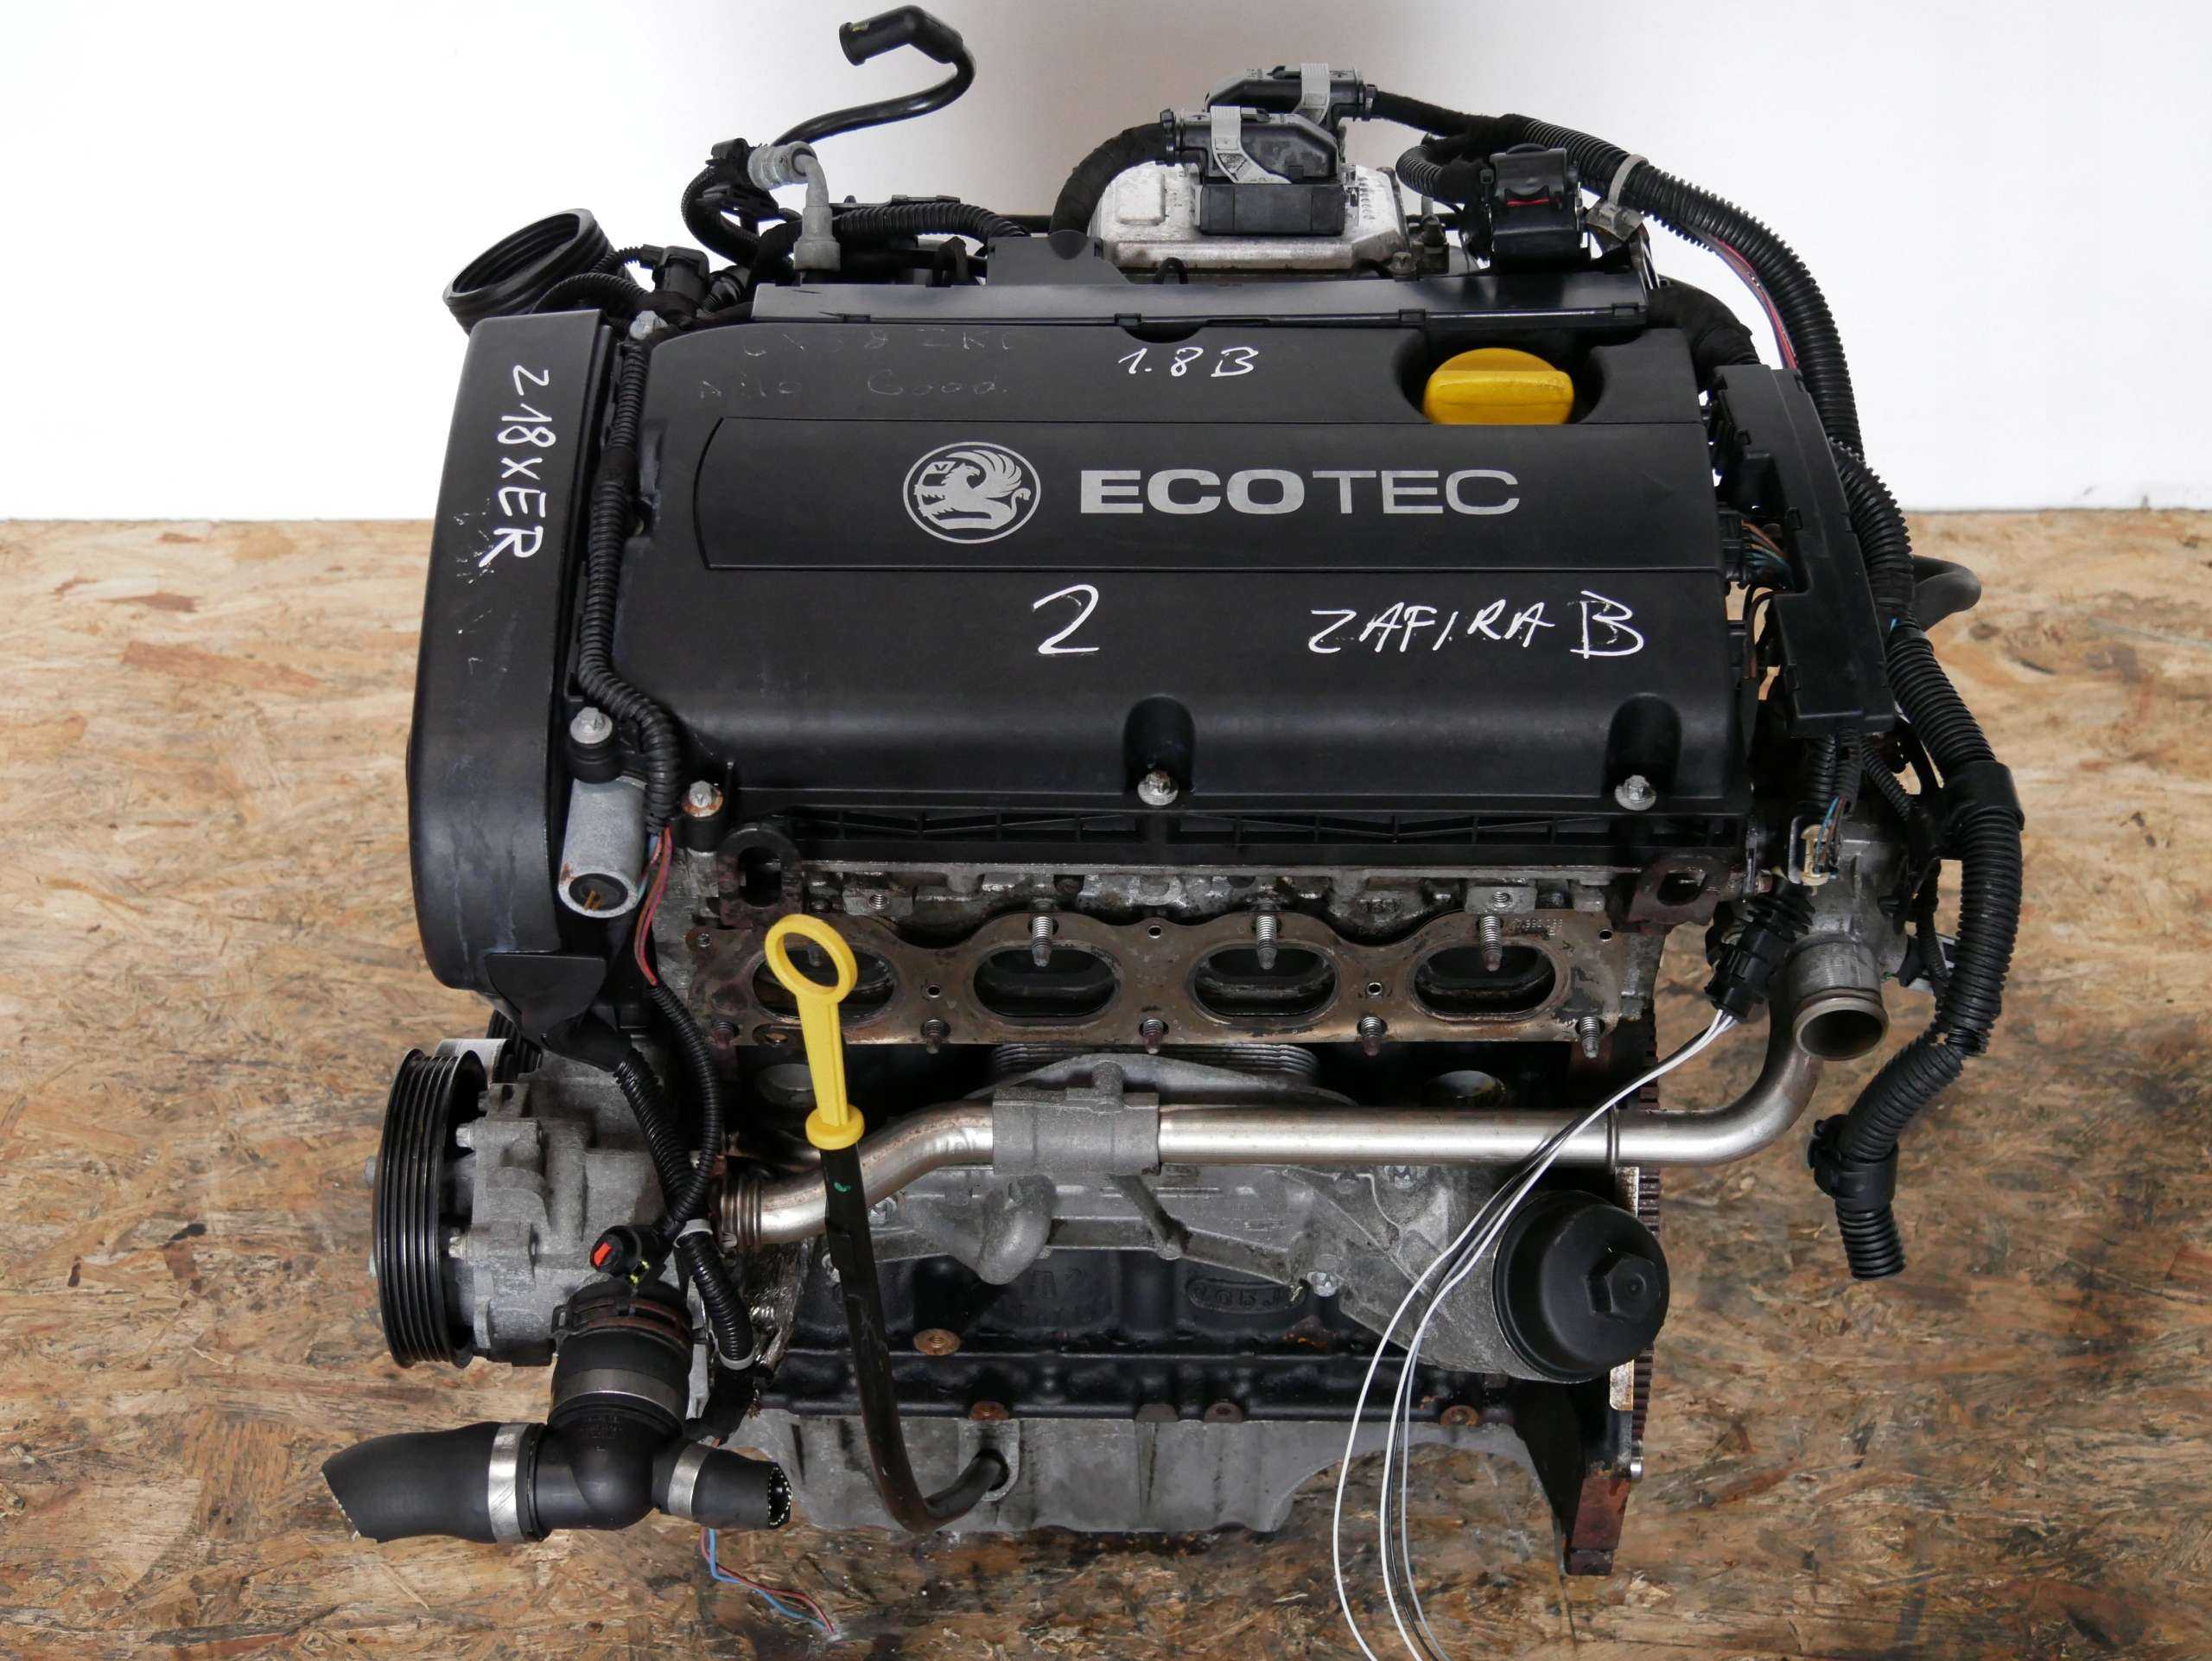 Двигатель опель астра н 1.6 литра характеристики, устройство грм